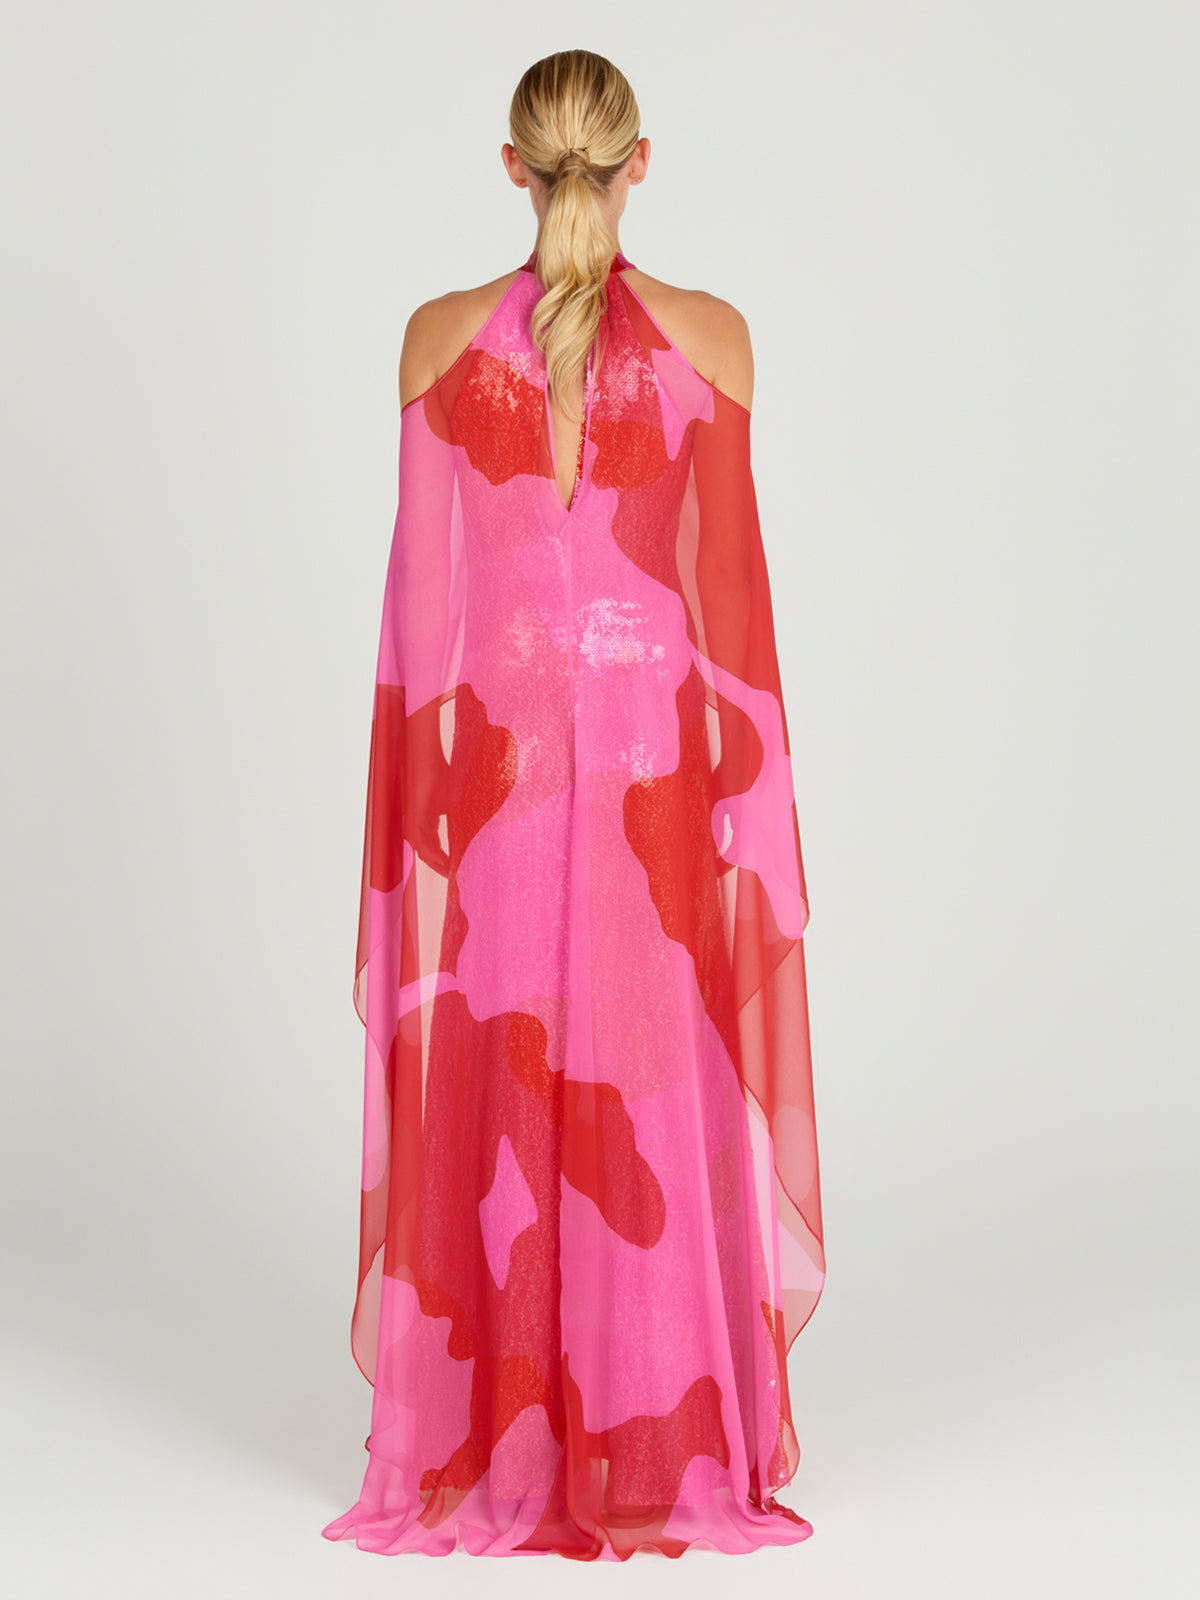 An elegant Lodi Dress Vermillion on a mannequin.